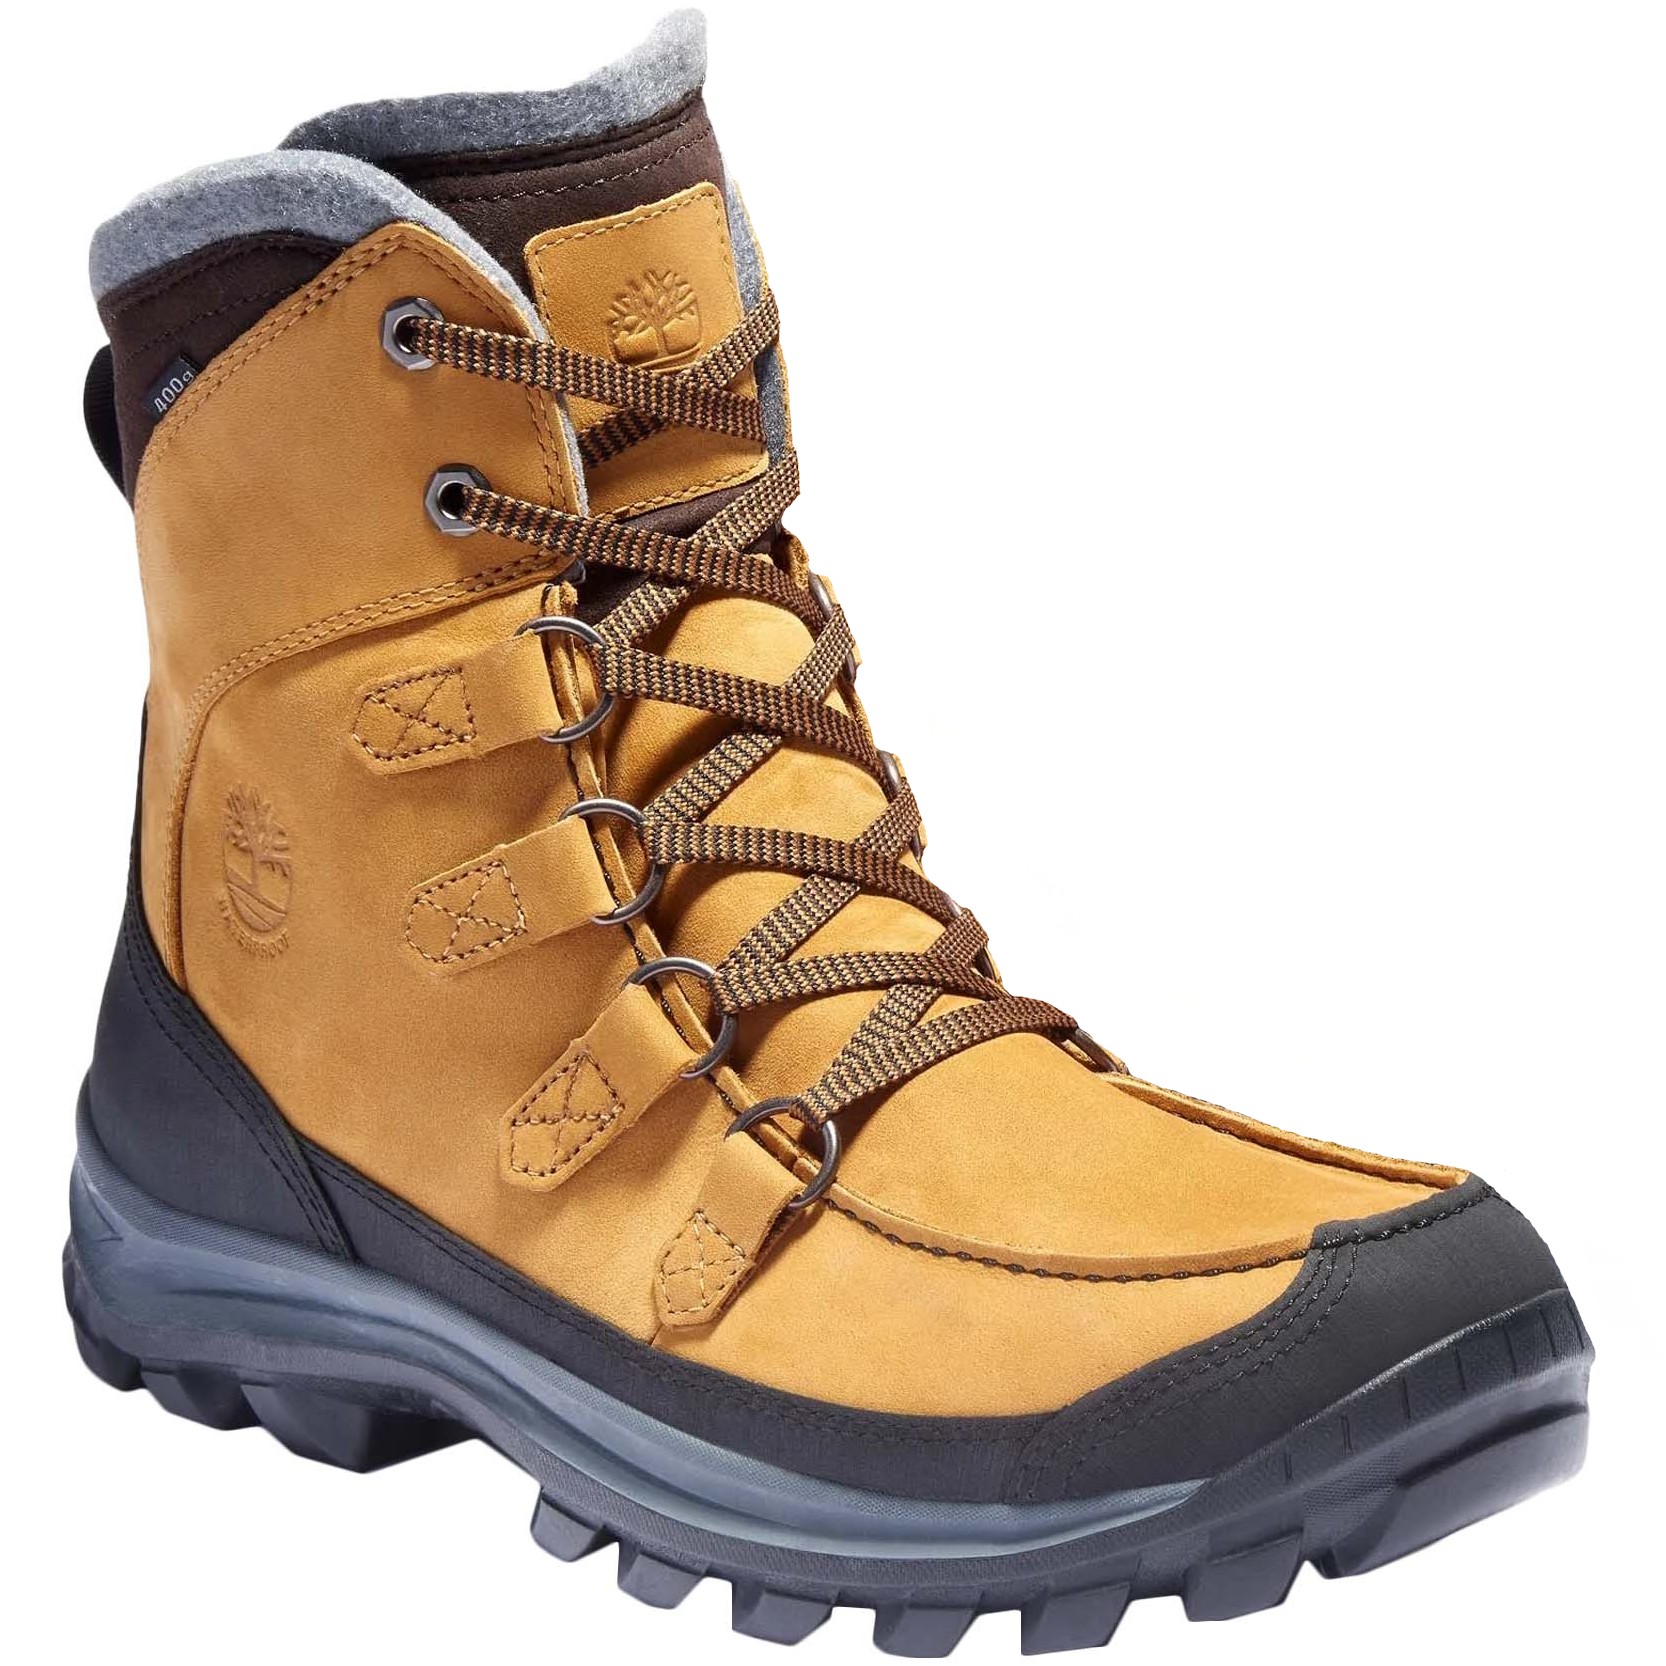 Timberland Chillberg Premium WP Insulated Winter Boots